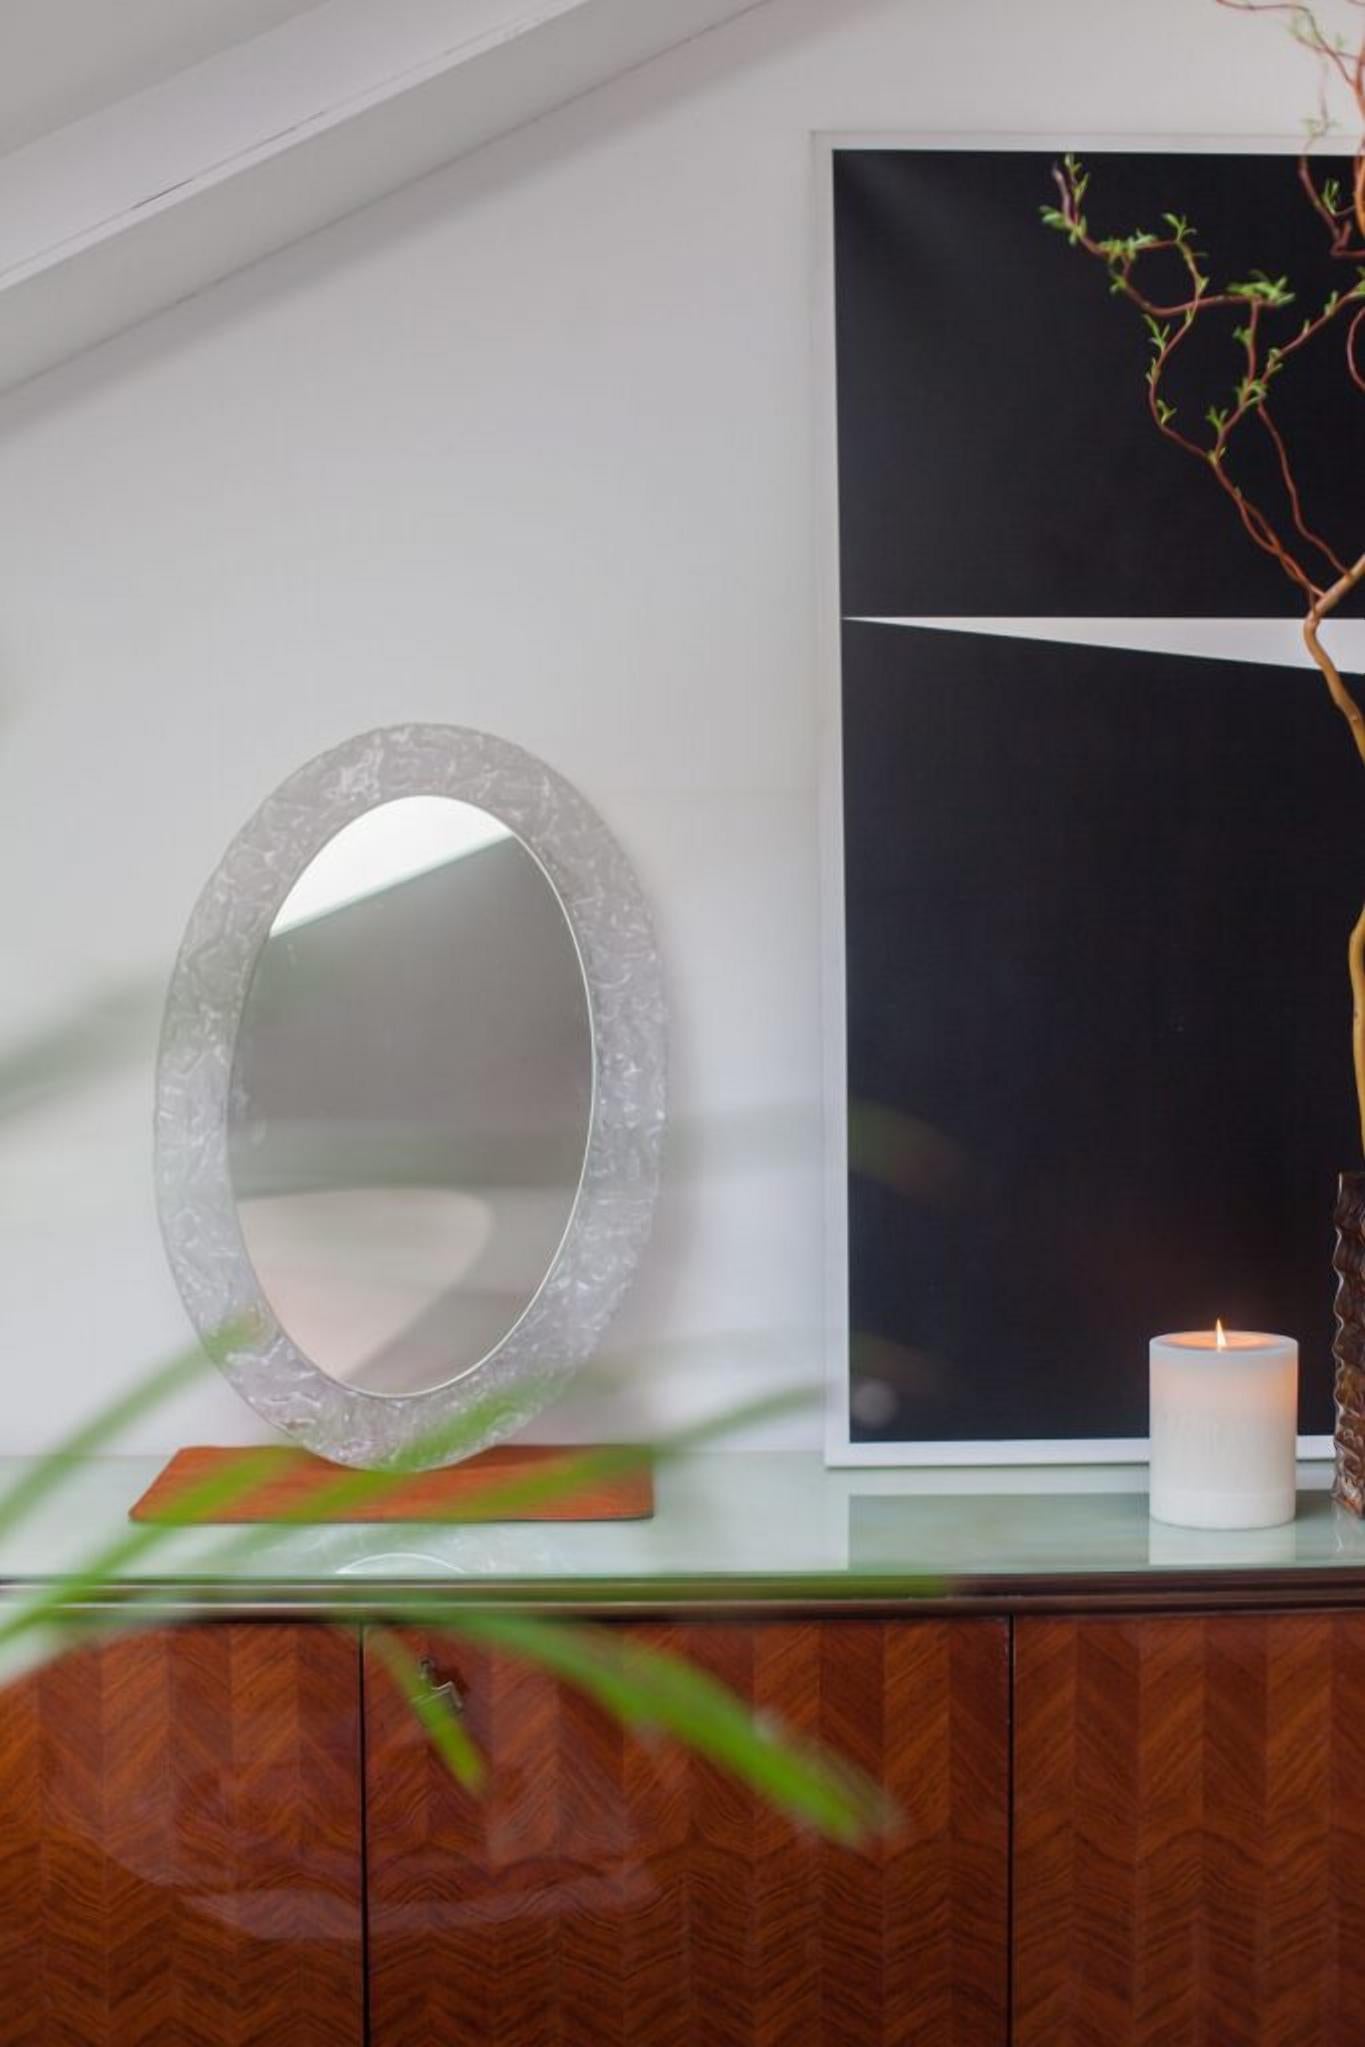 Miroir mural ovale, avec cadre en Lucite transparent texturé.

Ce miroir Lucite mural est une véritable pièce d'apparat qui ajoute à la fois un intérêt visuel et une fonctionnalité à n'importe quelle pièce, mettant en valeur la créativité et la